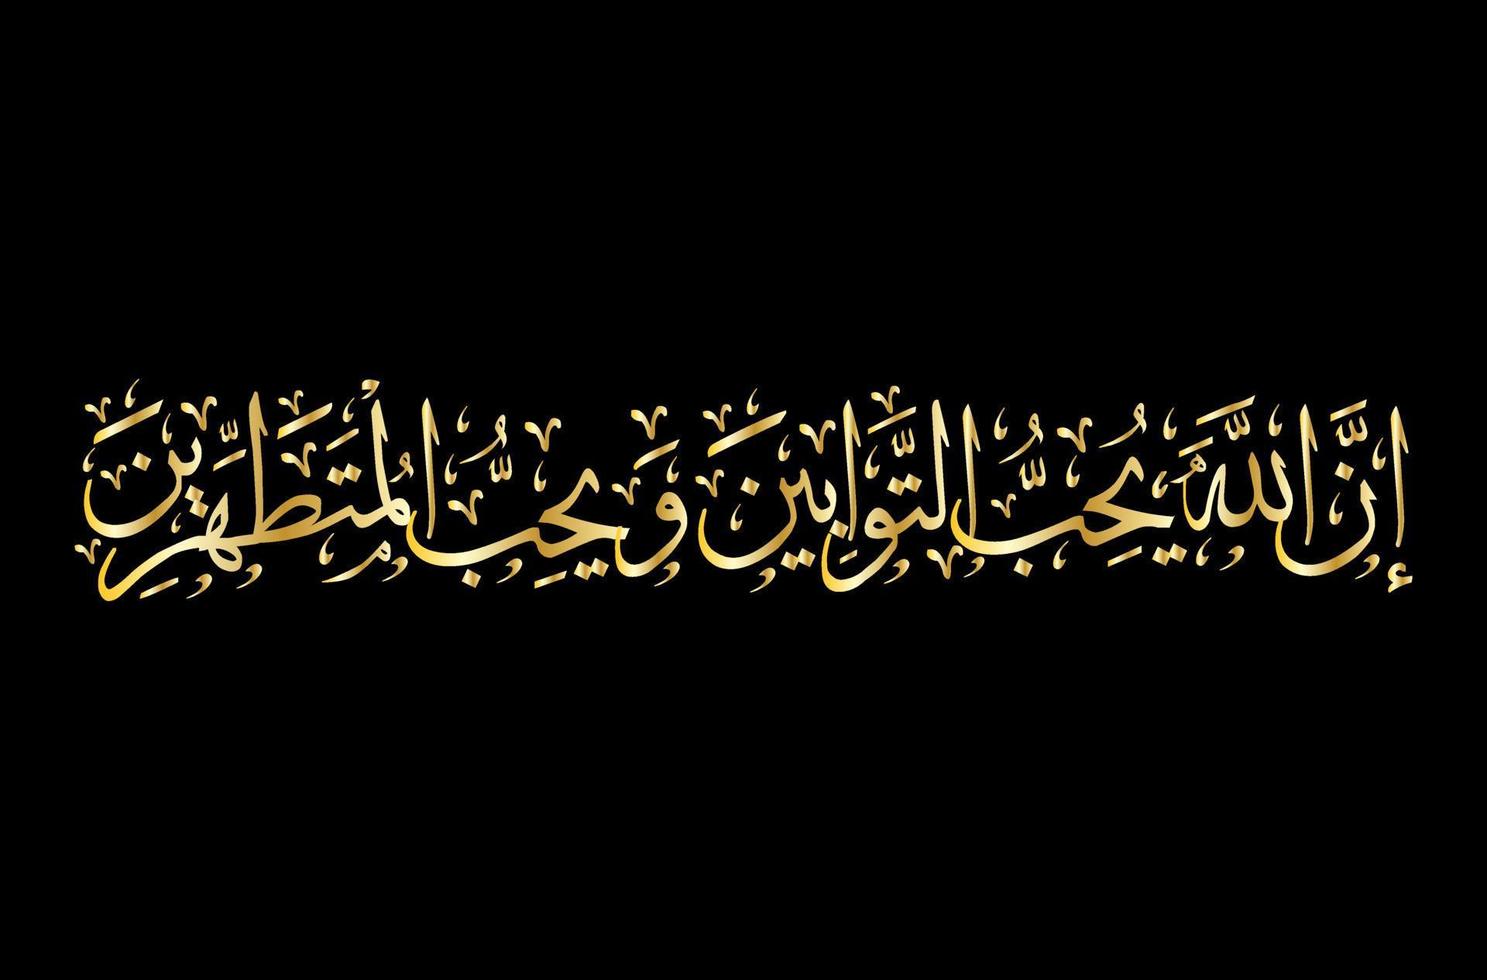 Arabisch schoonschrift van de heilig koran soera 2 vers 222 vector